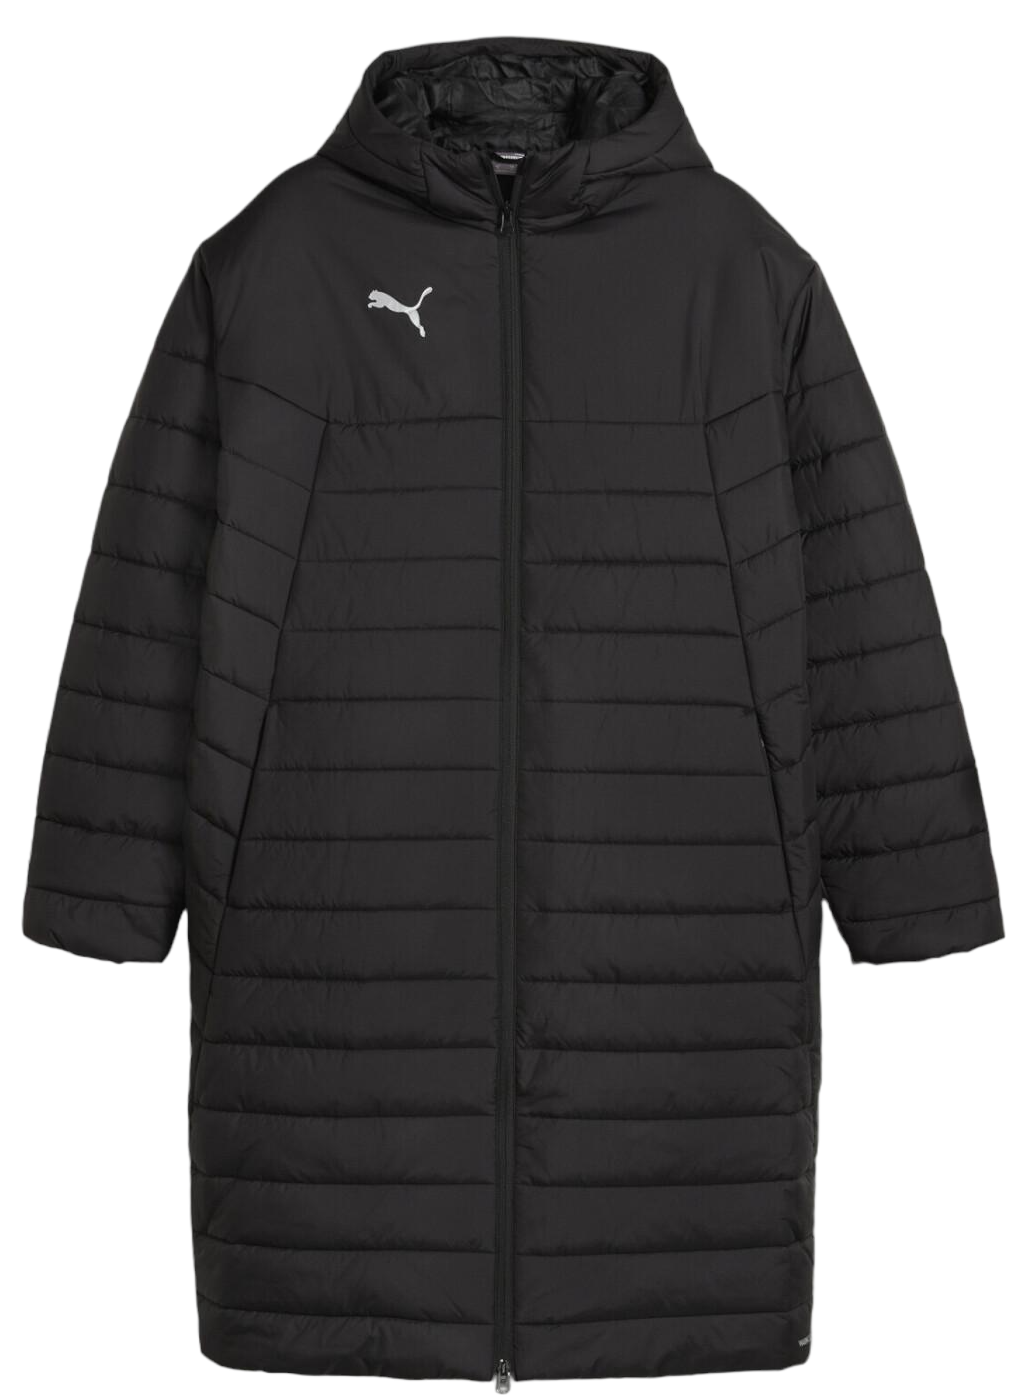 Veste à capuche Puma teamFINAL Bench Jacket